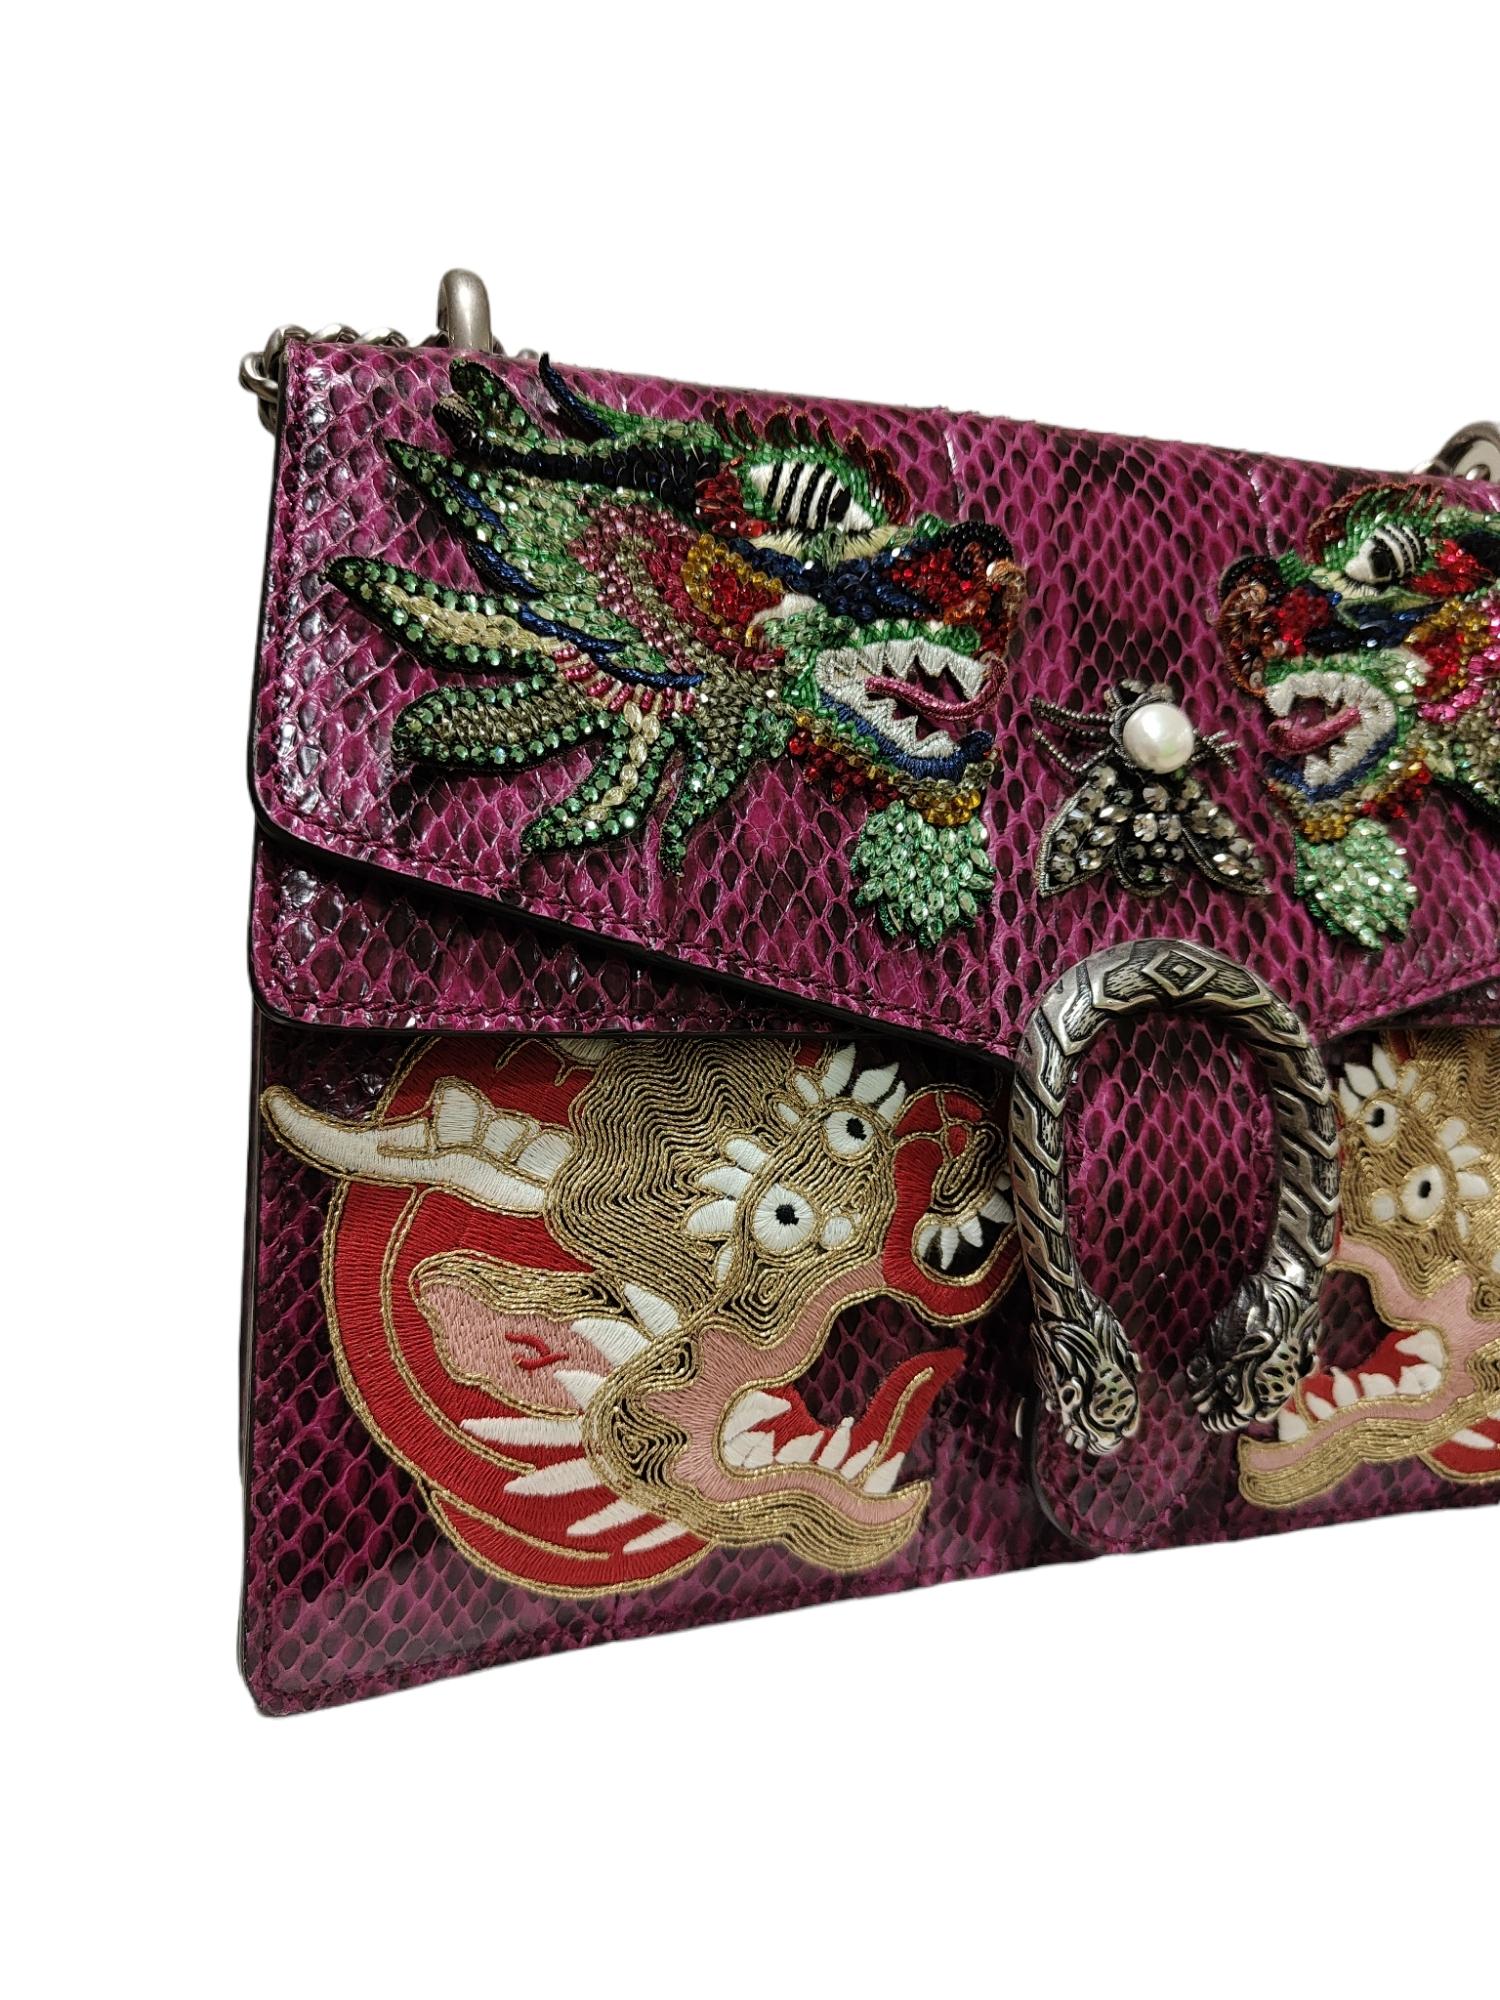 Gucci Limited Edition python skin Dionysus shoulder bag 2